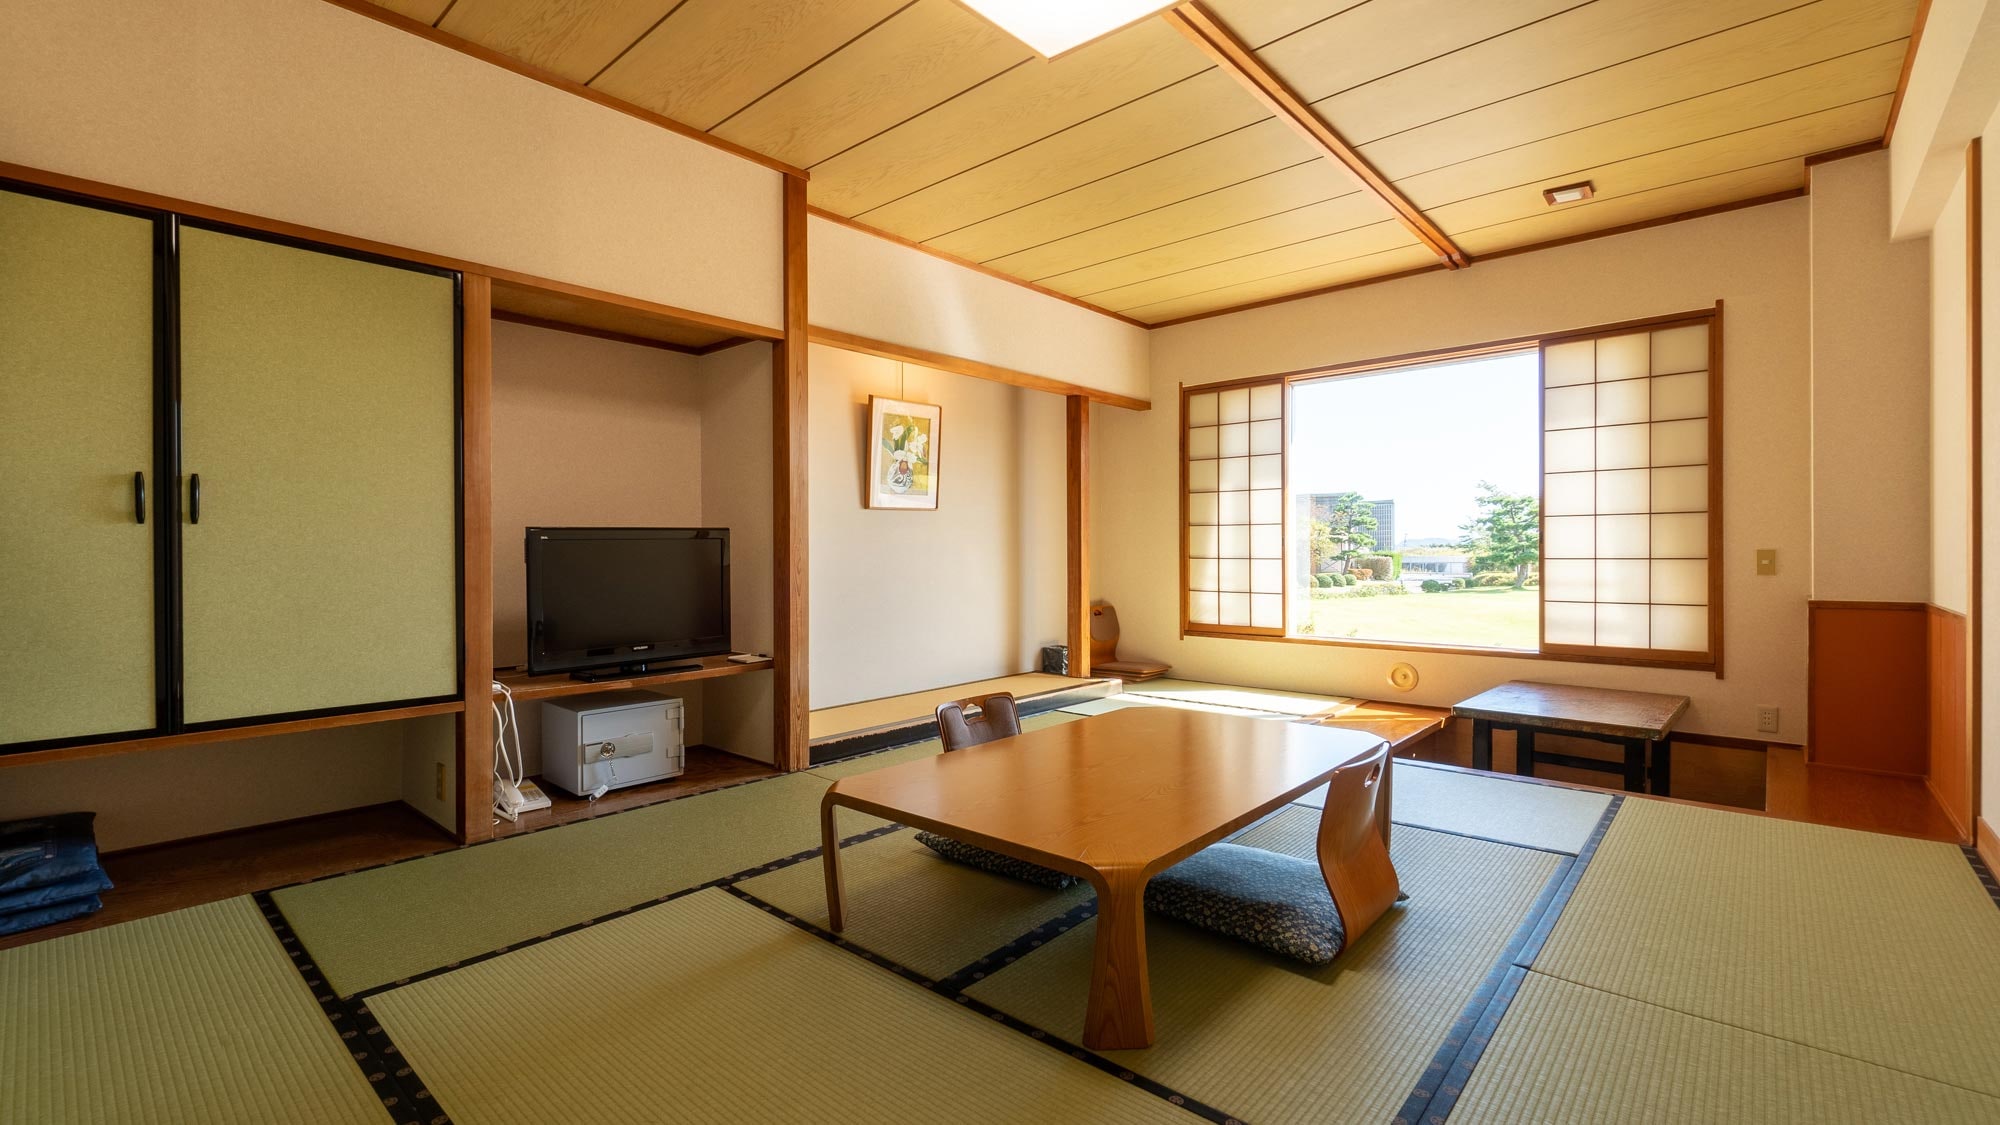 Takashirokan-Japanese-style room 12 tatami mats (garden)